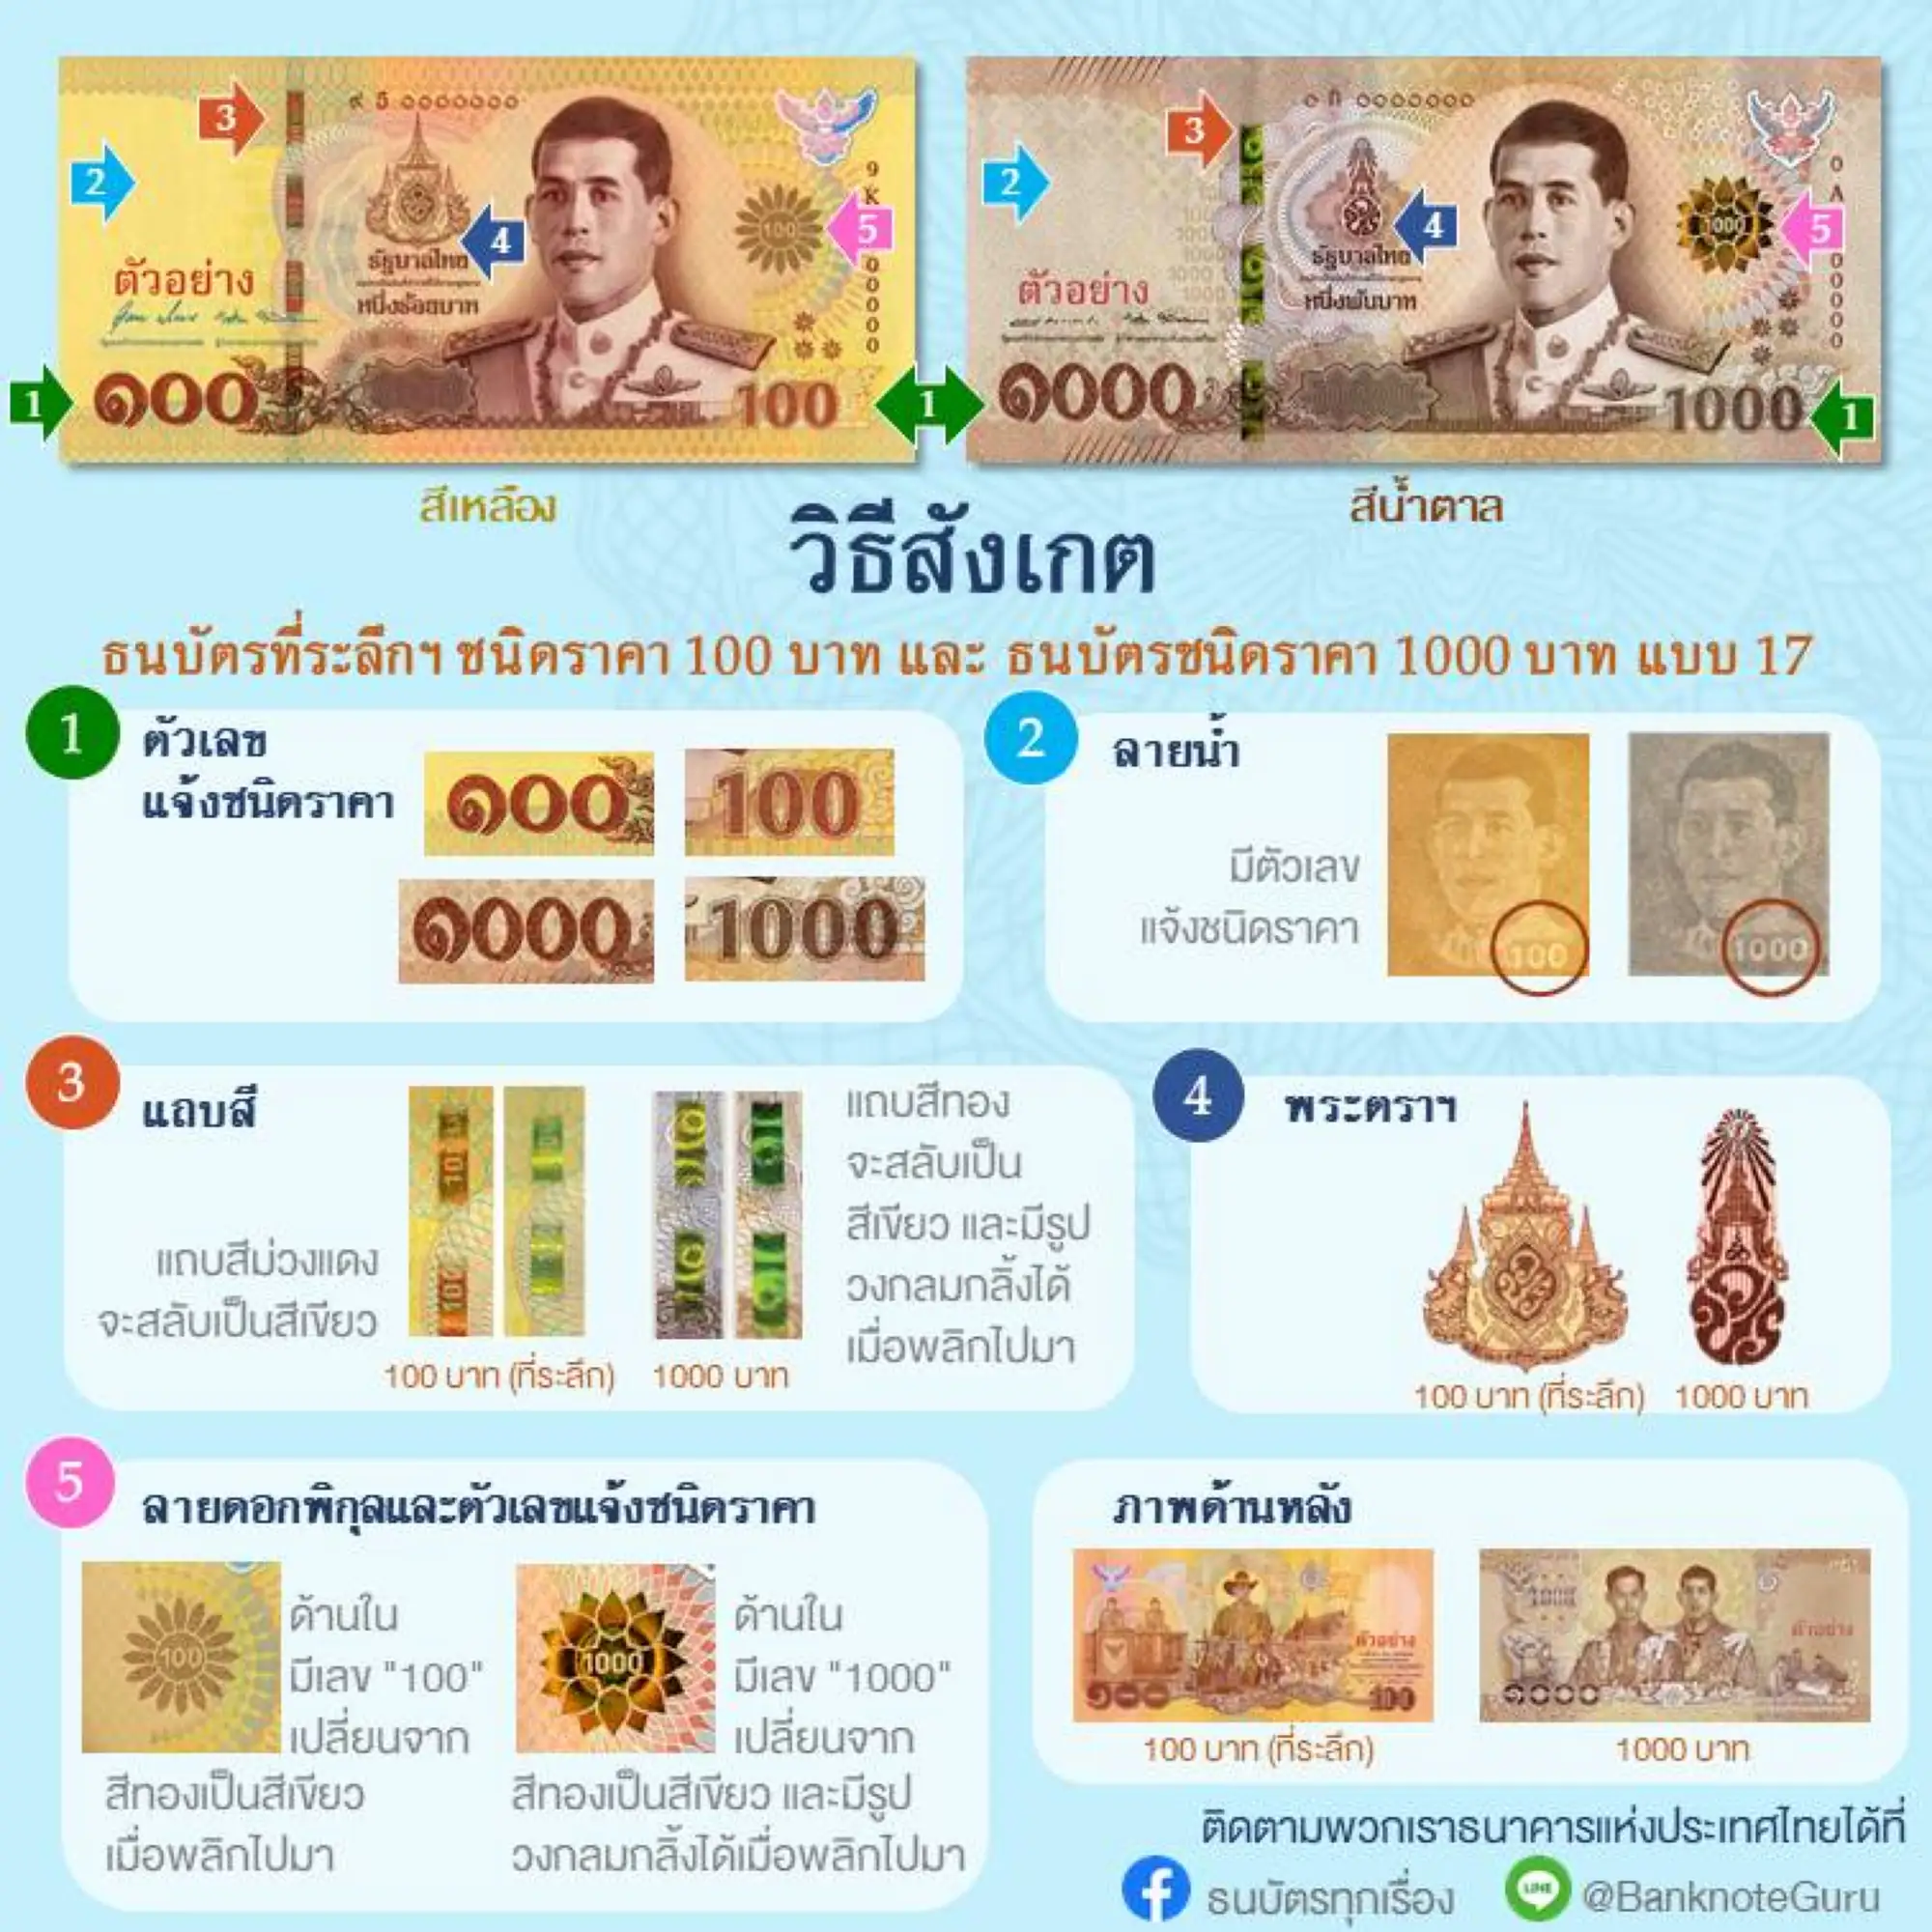 泰國中央銀行列出了5項新版100泰銖紀念幣和舊版1000泰銖紙幣的差異（圖片來源：泰國中央銀行官方粉專）